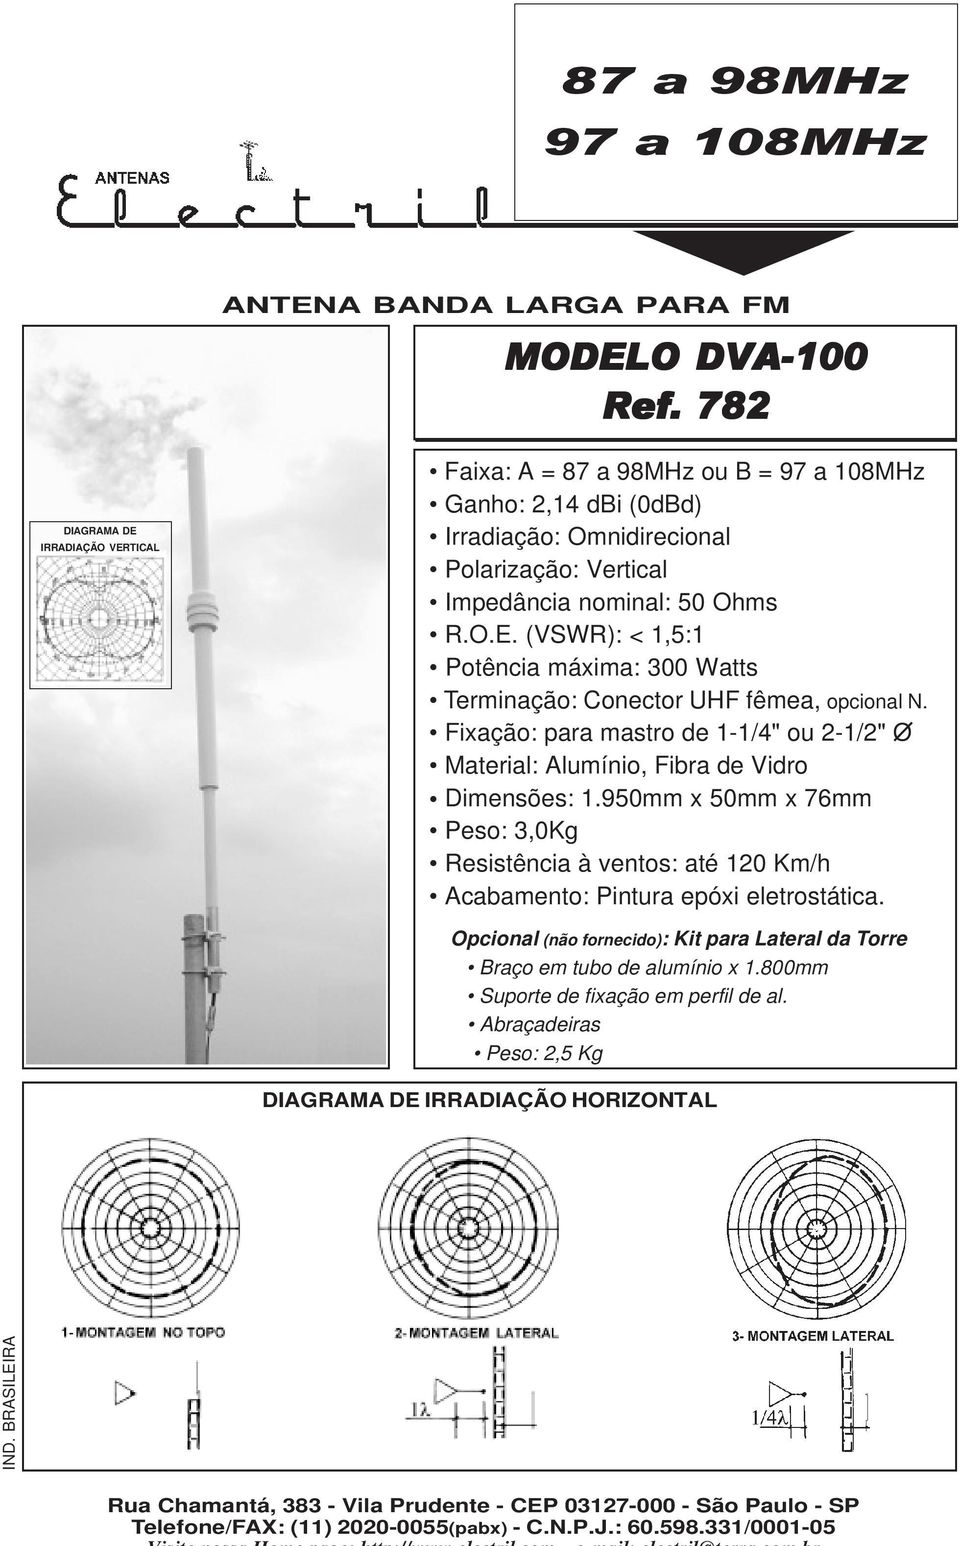 Fixação: para mastro de 1-1/4" o 2-1/2" O Material: Almínio, Fibra de Vidro Dimensões: 1.950mm x 50mm x 76mm Peso: 3,0Kg Resistência à ventos: até 120 Km/h Acabamento: Pintra epóxi eletrostática.